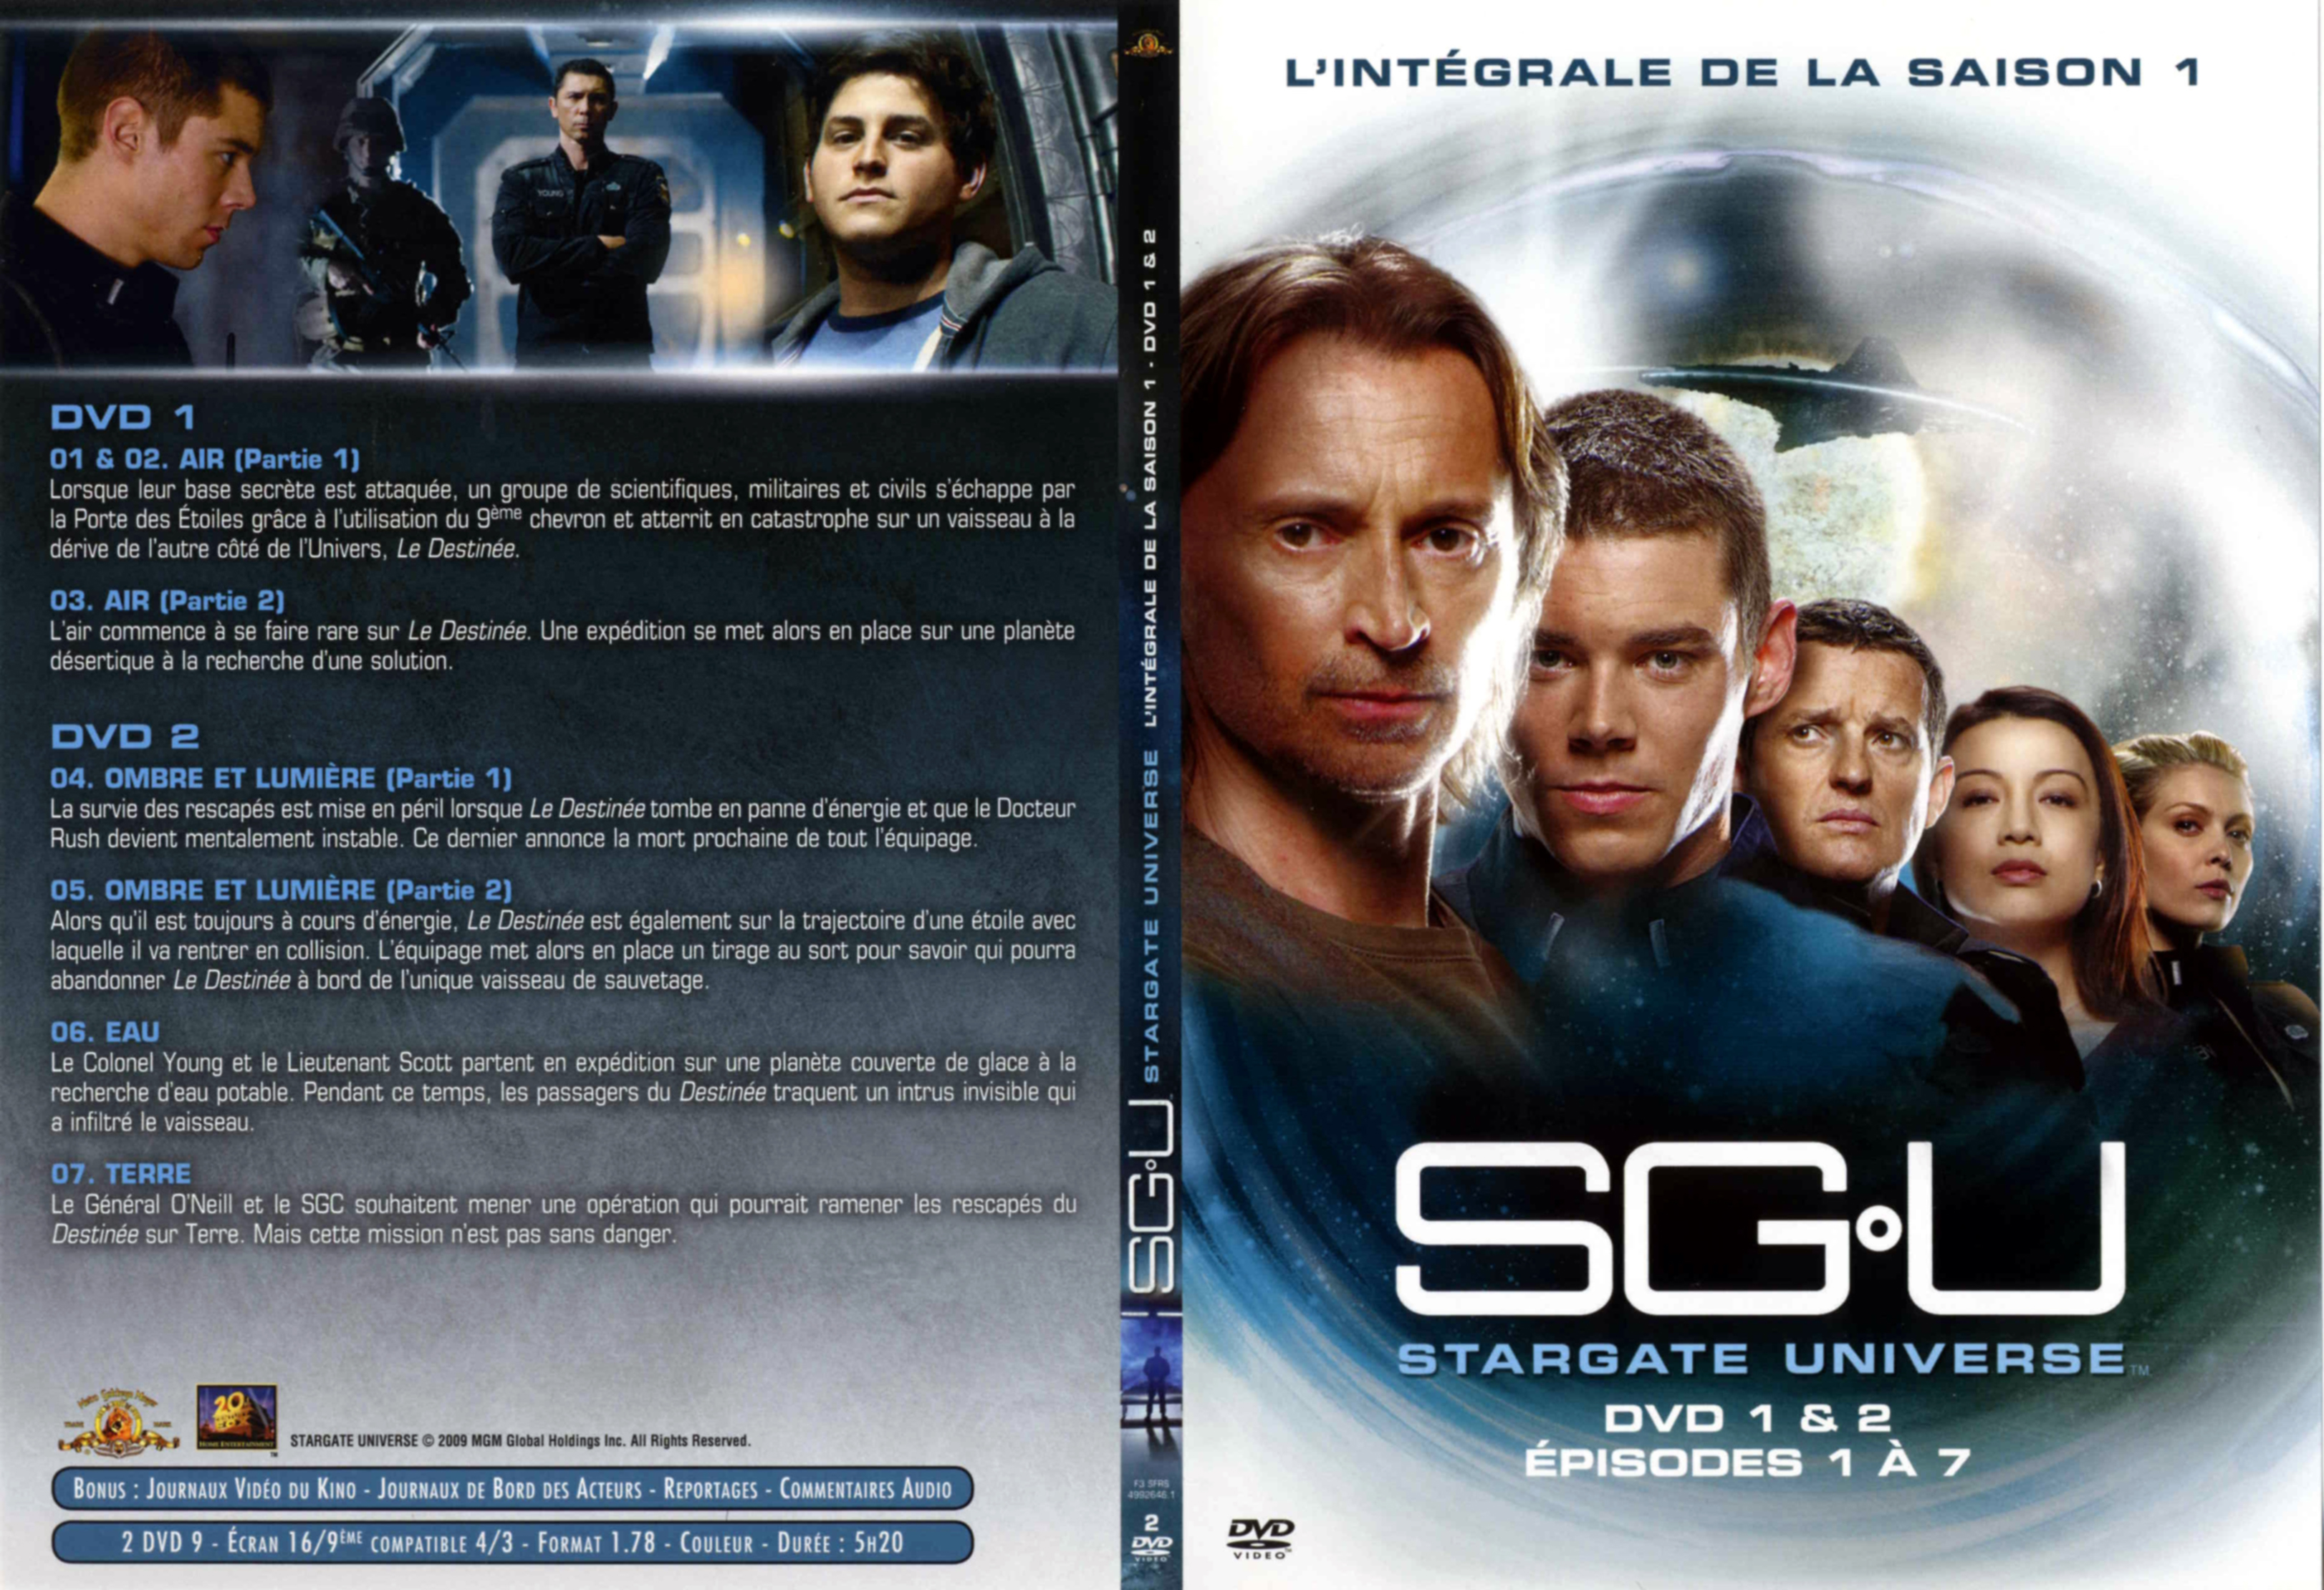 Jaquette DVD Stargate Universe Saison 1 DVD 1